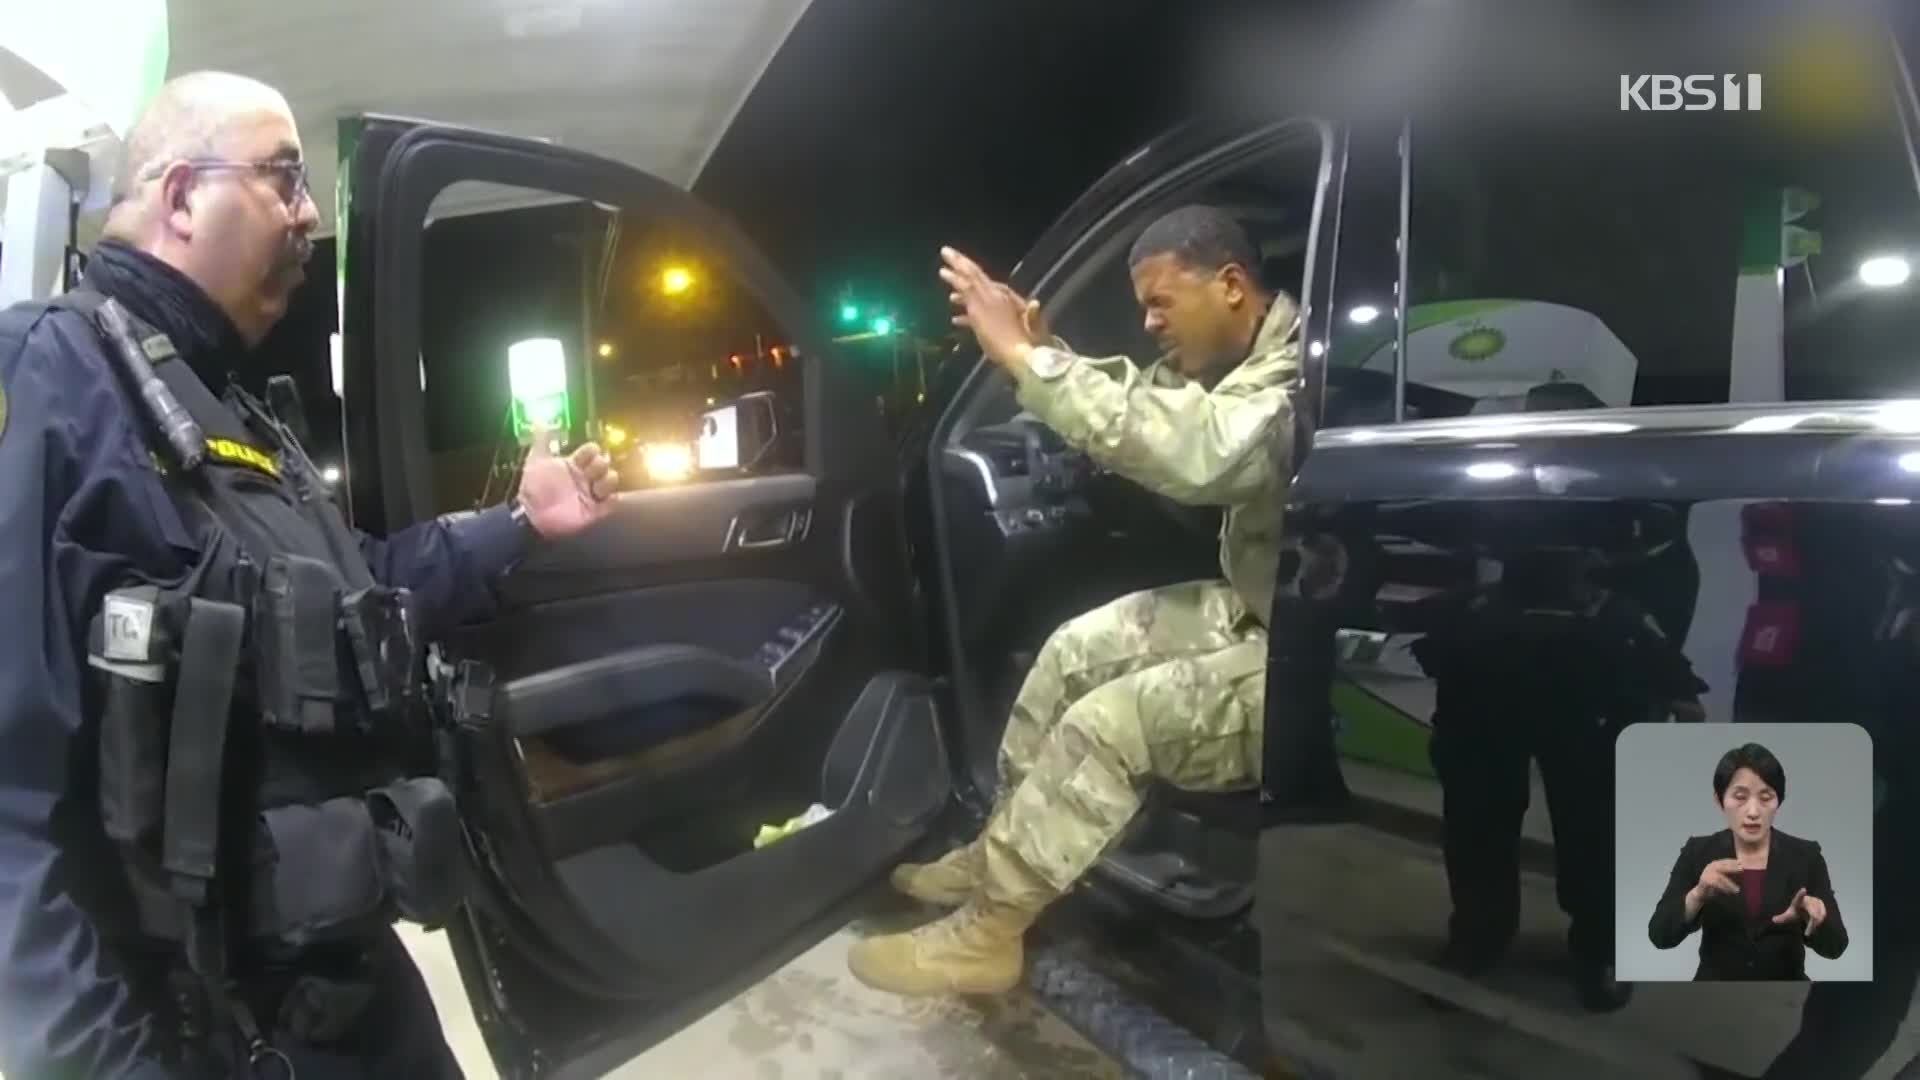 美 경찰, 교통 단속 중 흑인 장교에게 최루액 뿌리고 폭행